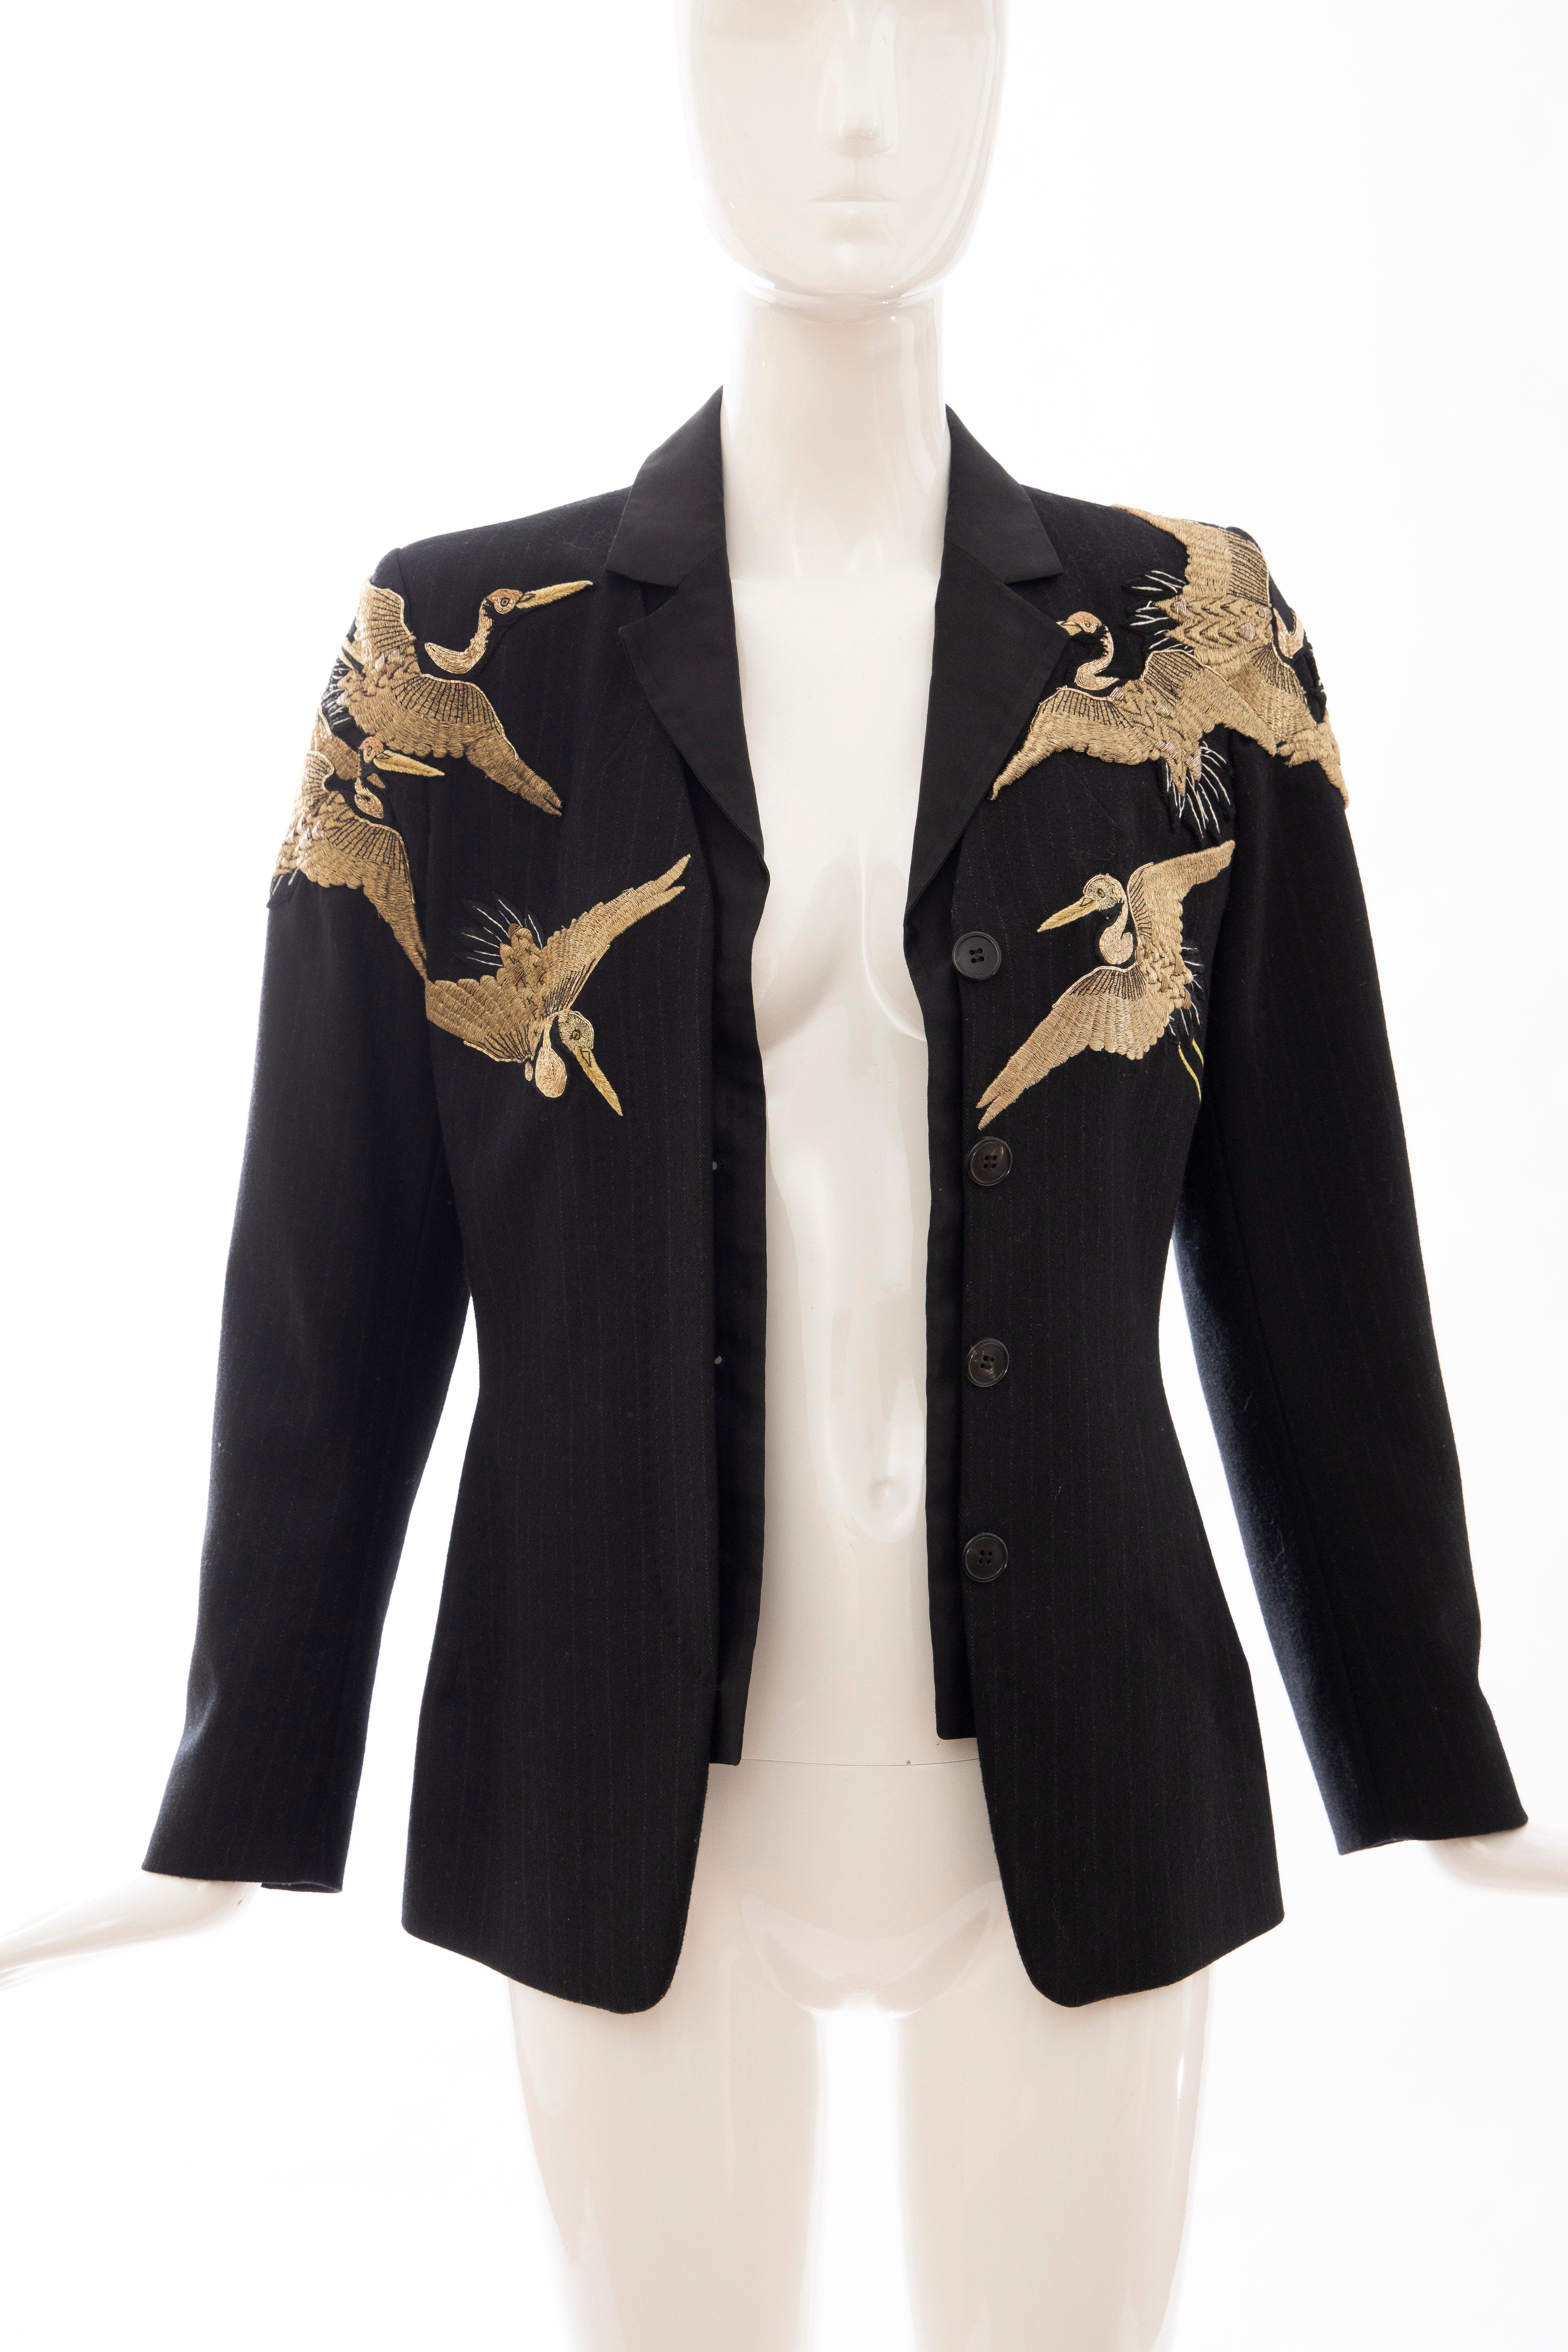 Dries van Noten Runway Black Wool Pinstripe Embroidered Jacket, Fall 2012 7